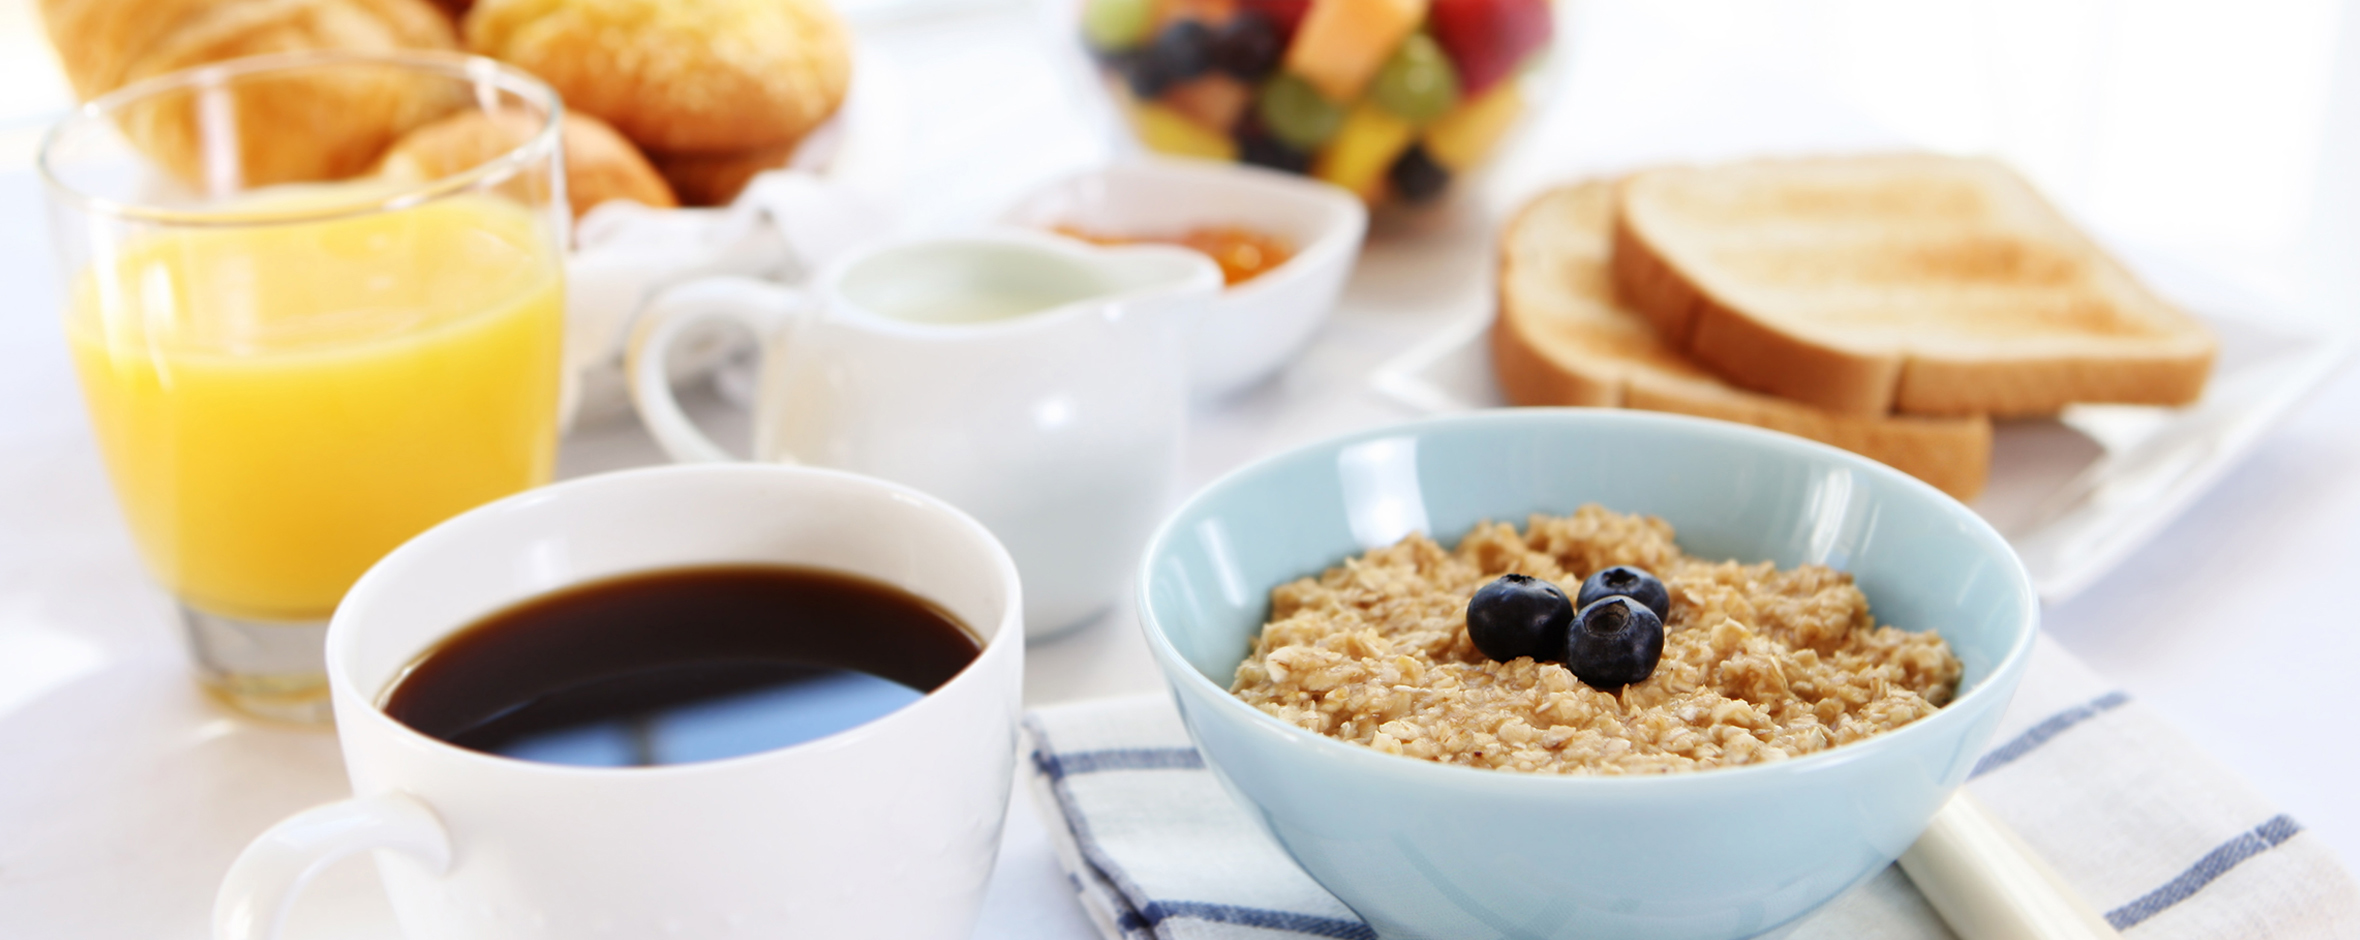 ¿Que desayunar? 3 grupos de alimentos para preparar un desayuno saludable